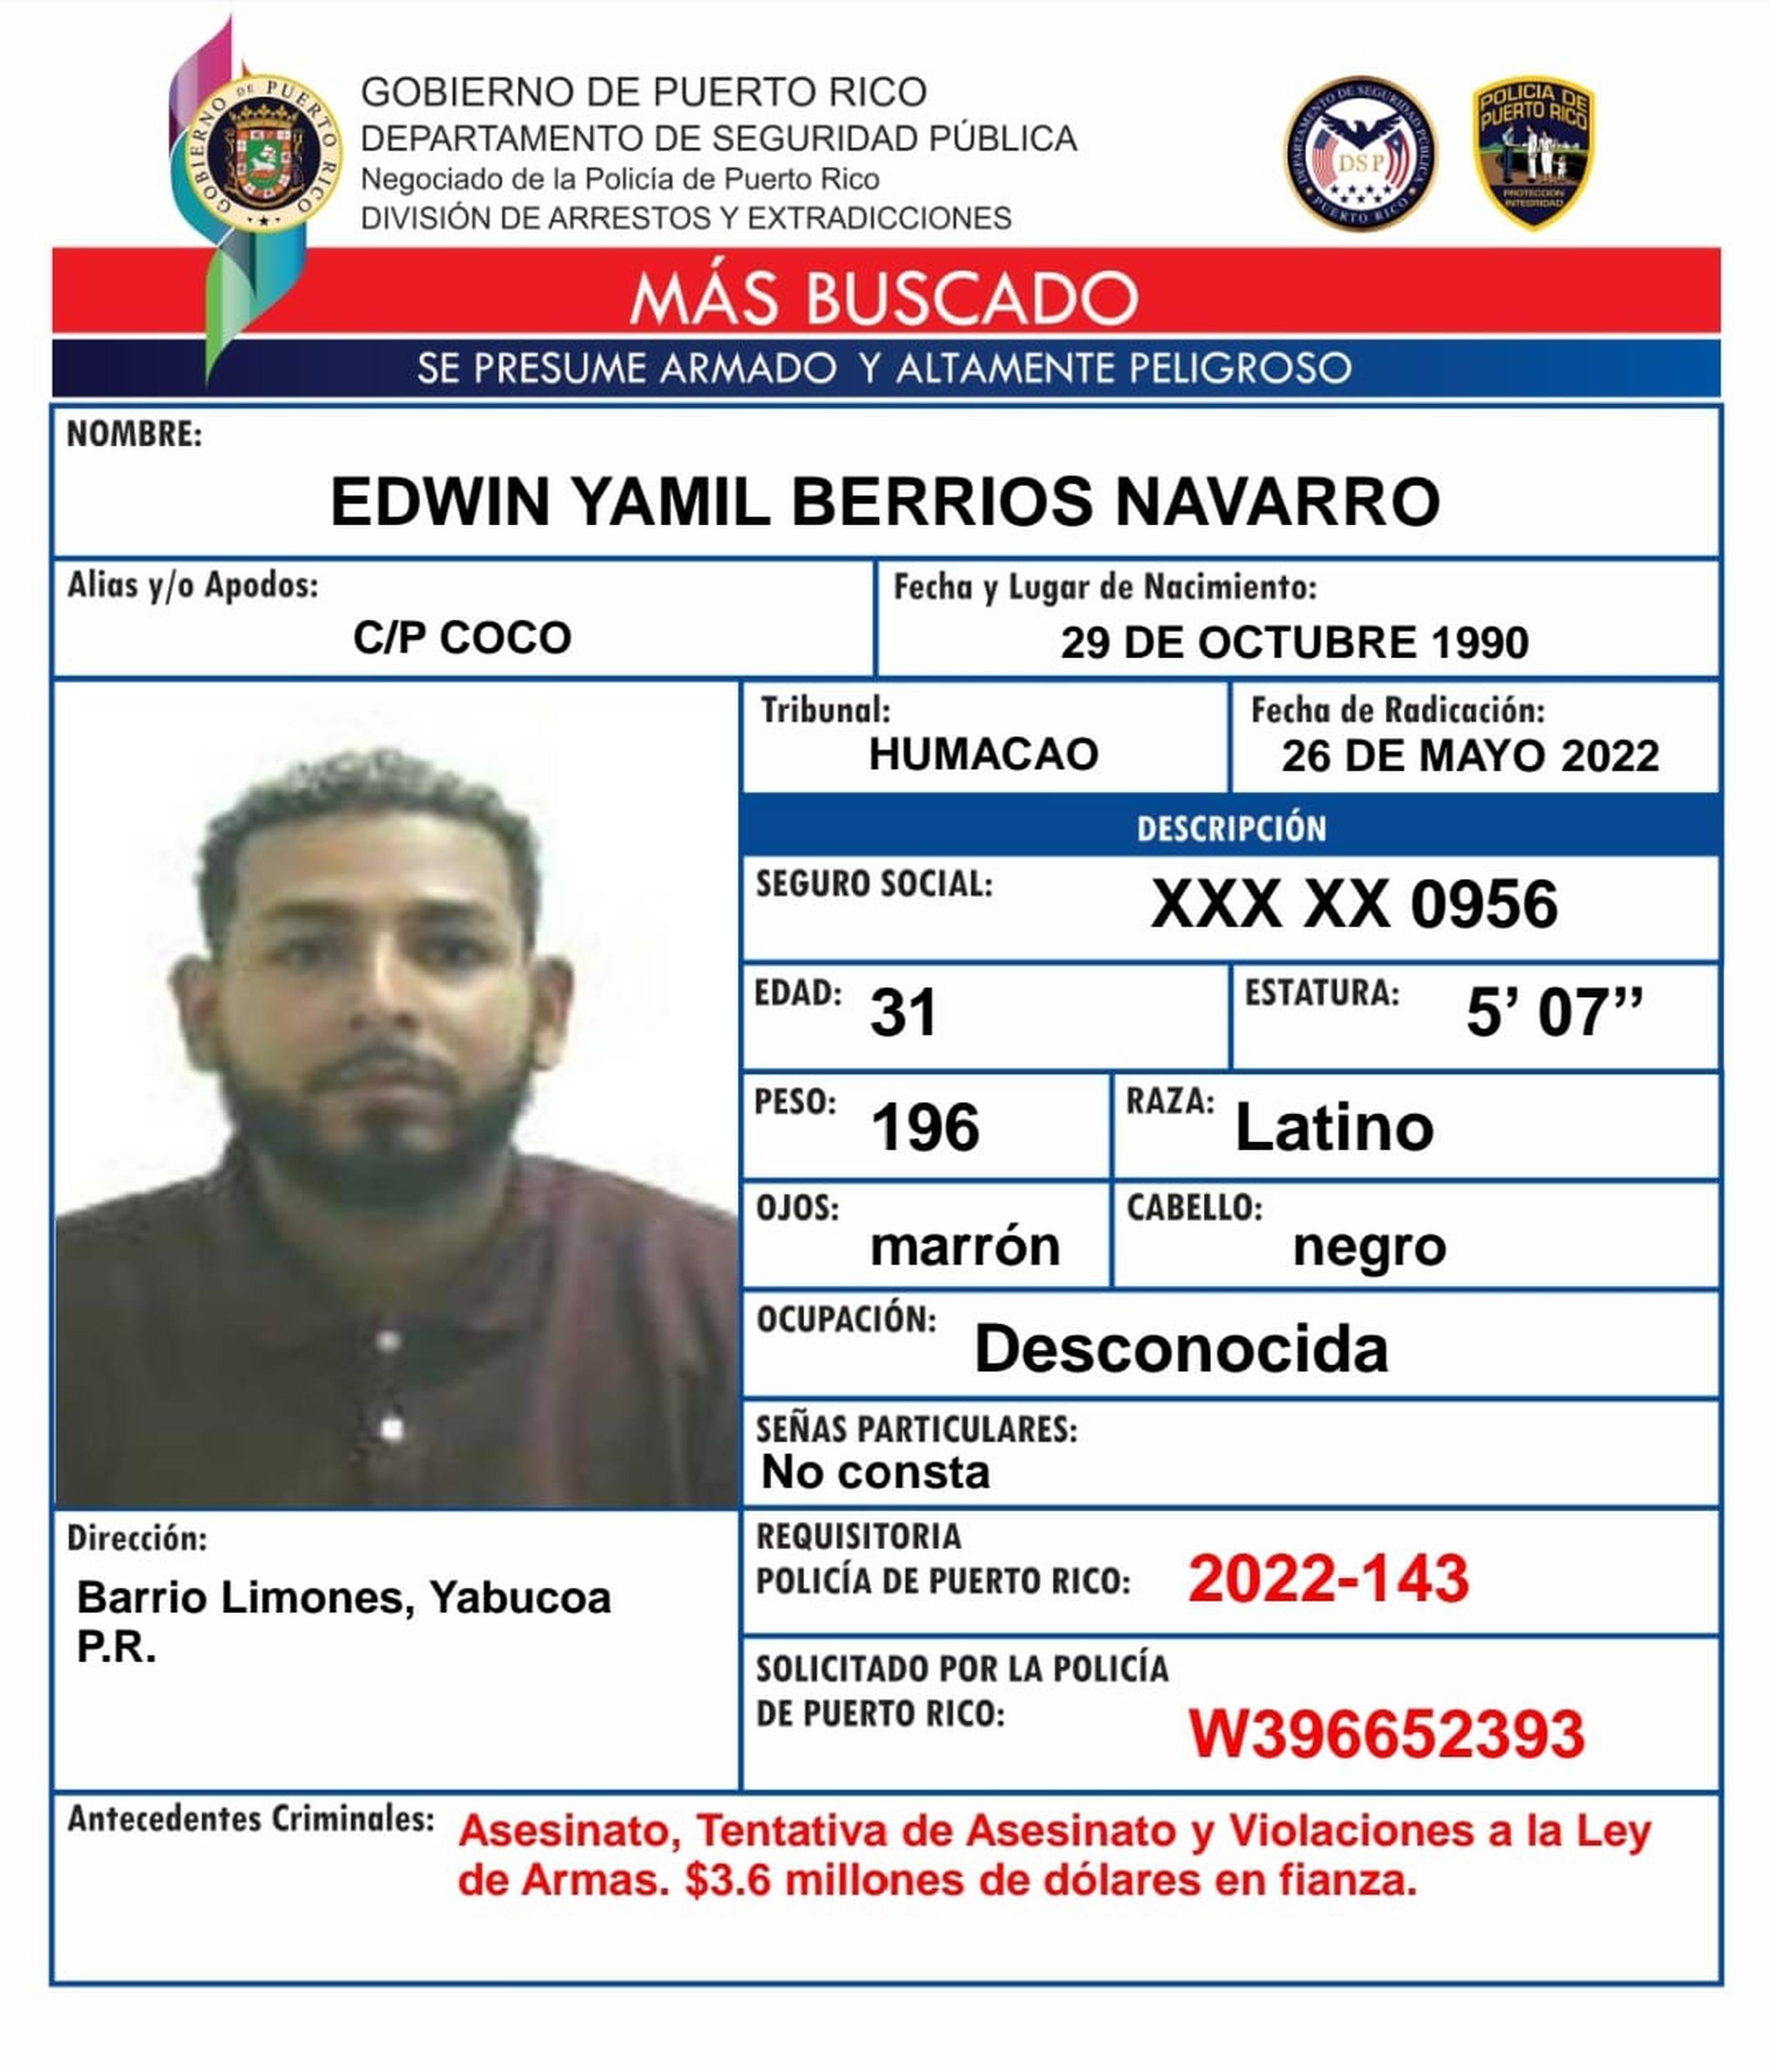 Contra Edwin Yamil Berríos Navarro alias Coco, pesa una orden de arresto con una fianza de $3.6 millones por los delitos de asesinato, tentativa de asesinato y violaciones a la Ley de Armas.